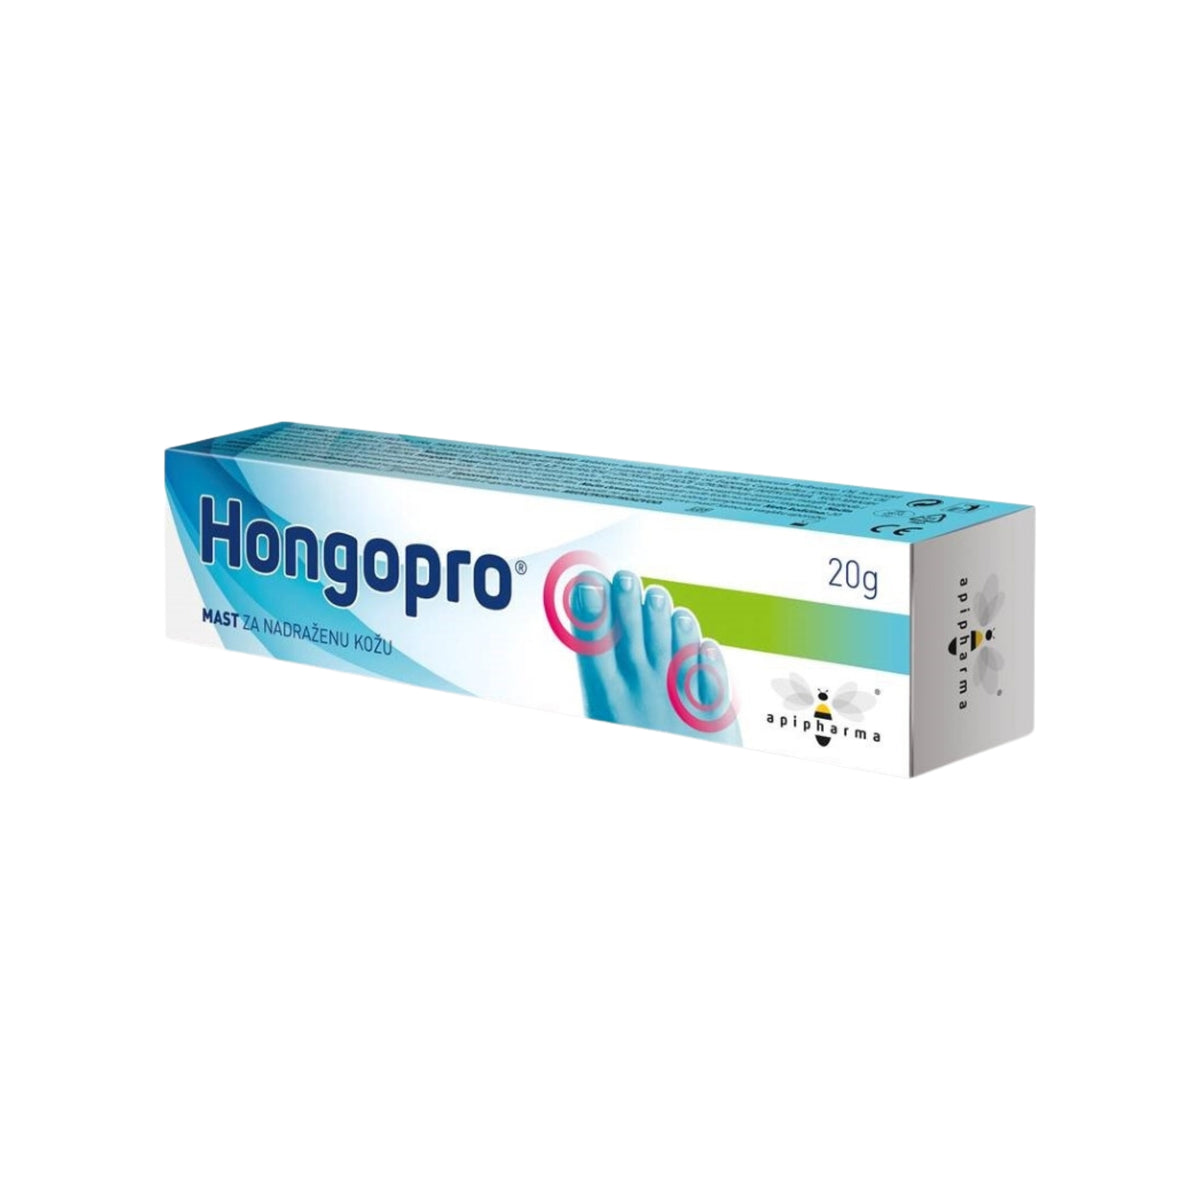 Hongopro® - Mazilo za razdraženo kožo 20 g